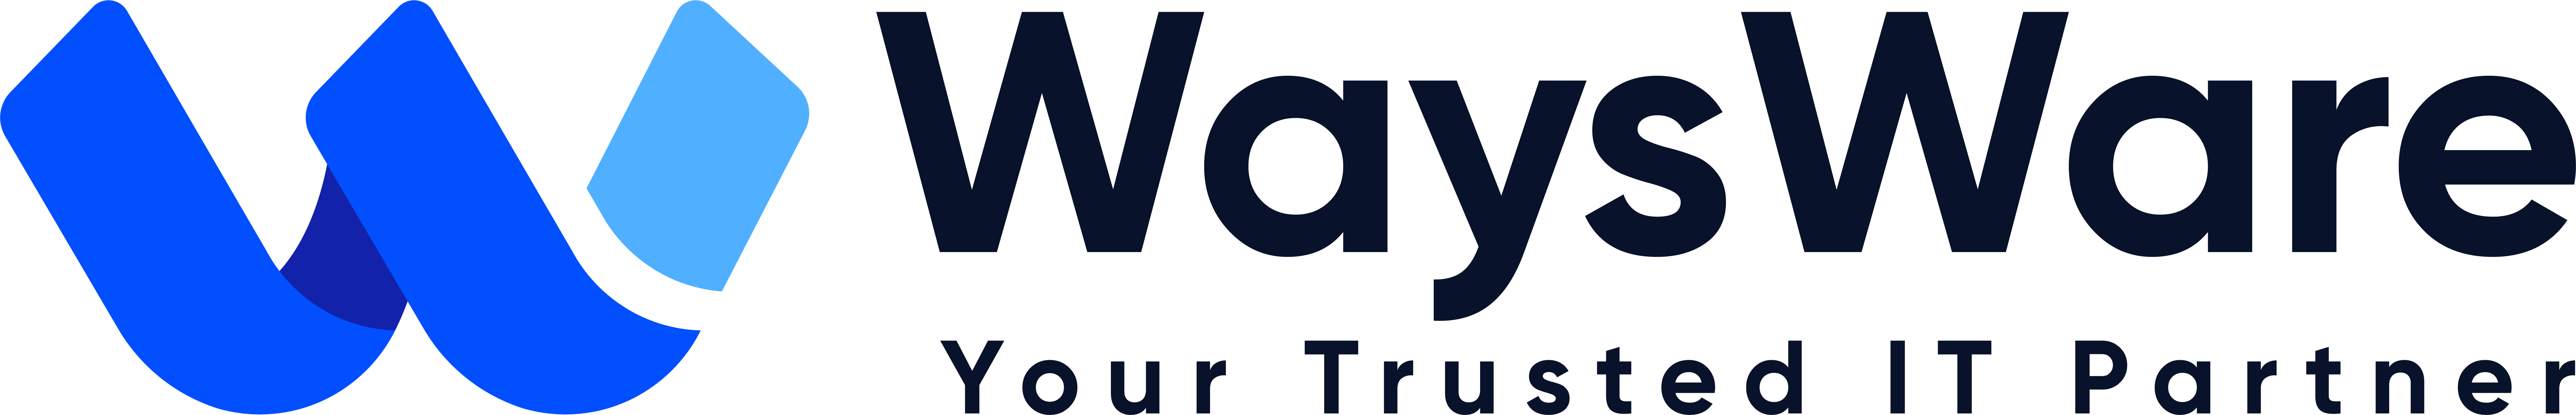 waysware-site-logo